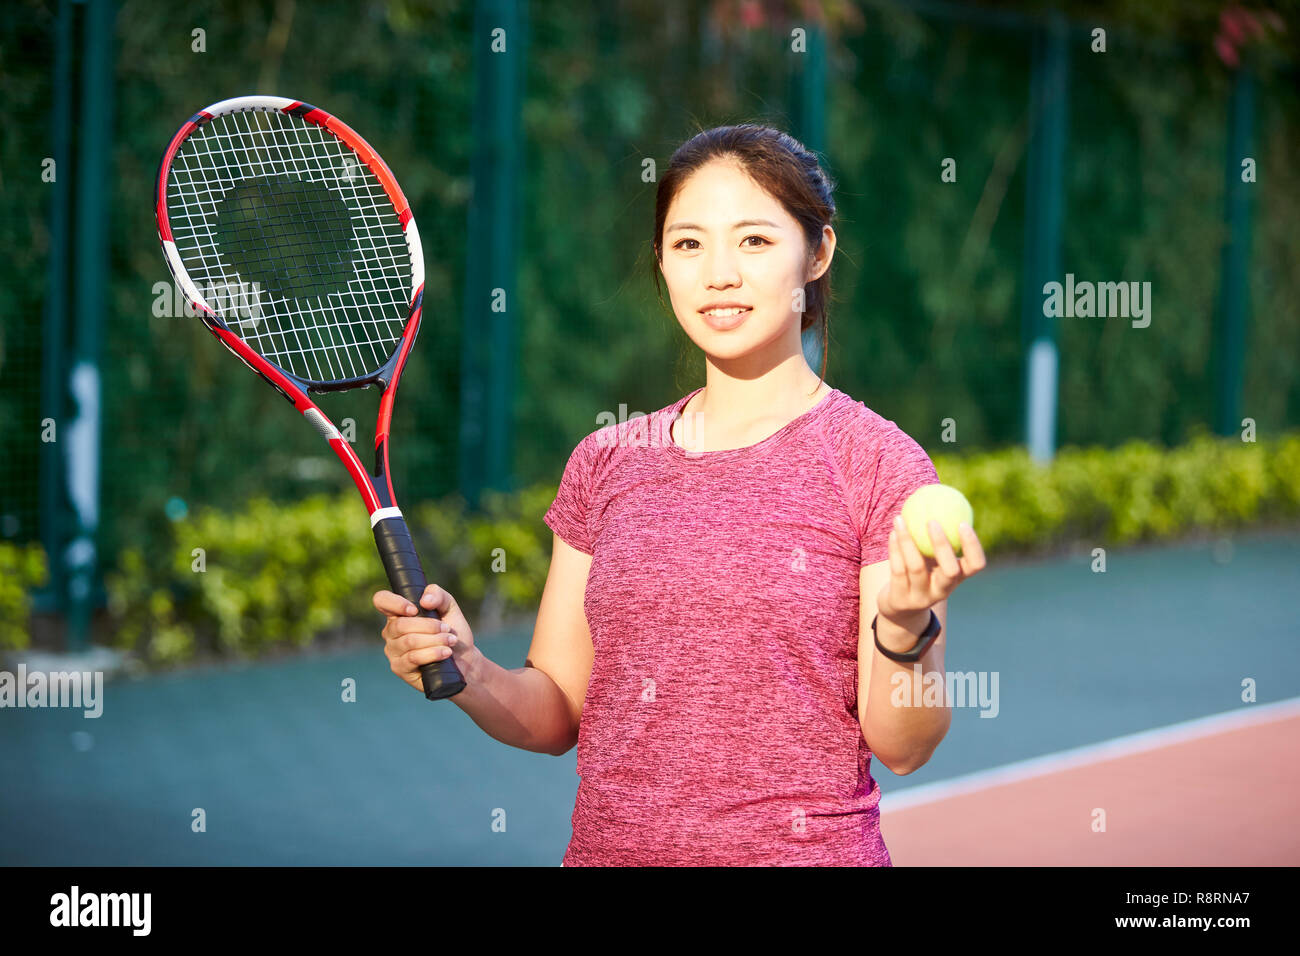 Portrait de plein air d'un jeune joueur de tennis asiatique à la caméra en souriant Banque D'Images